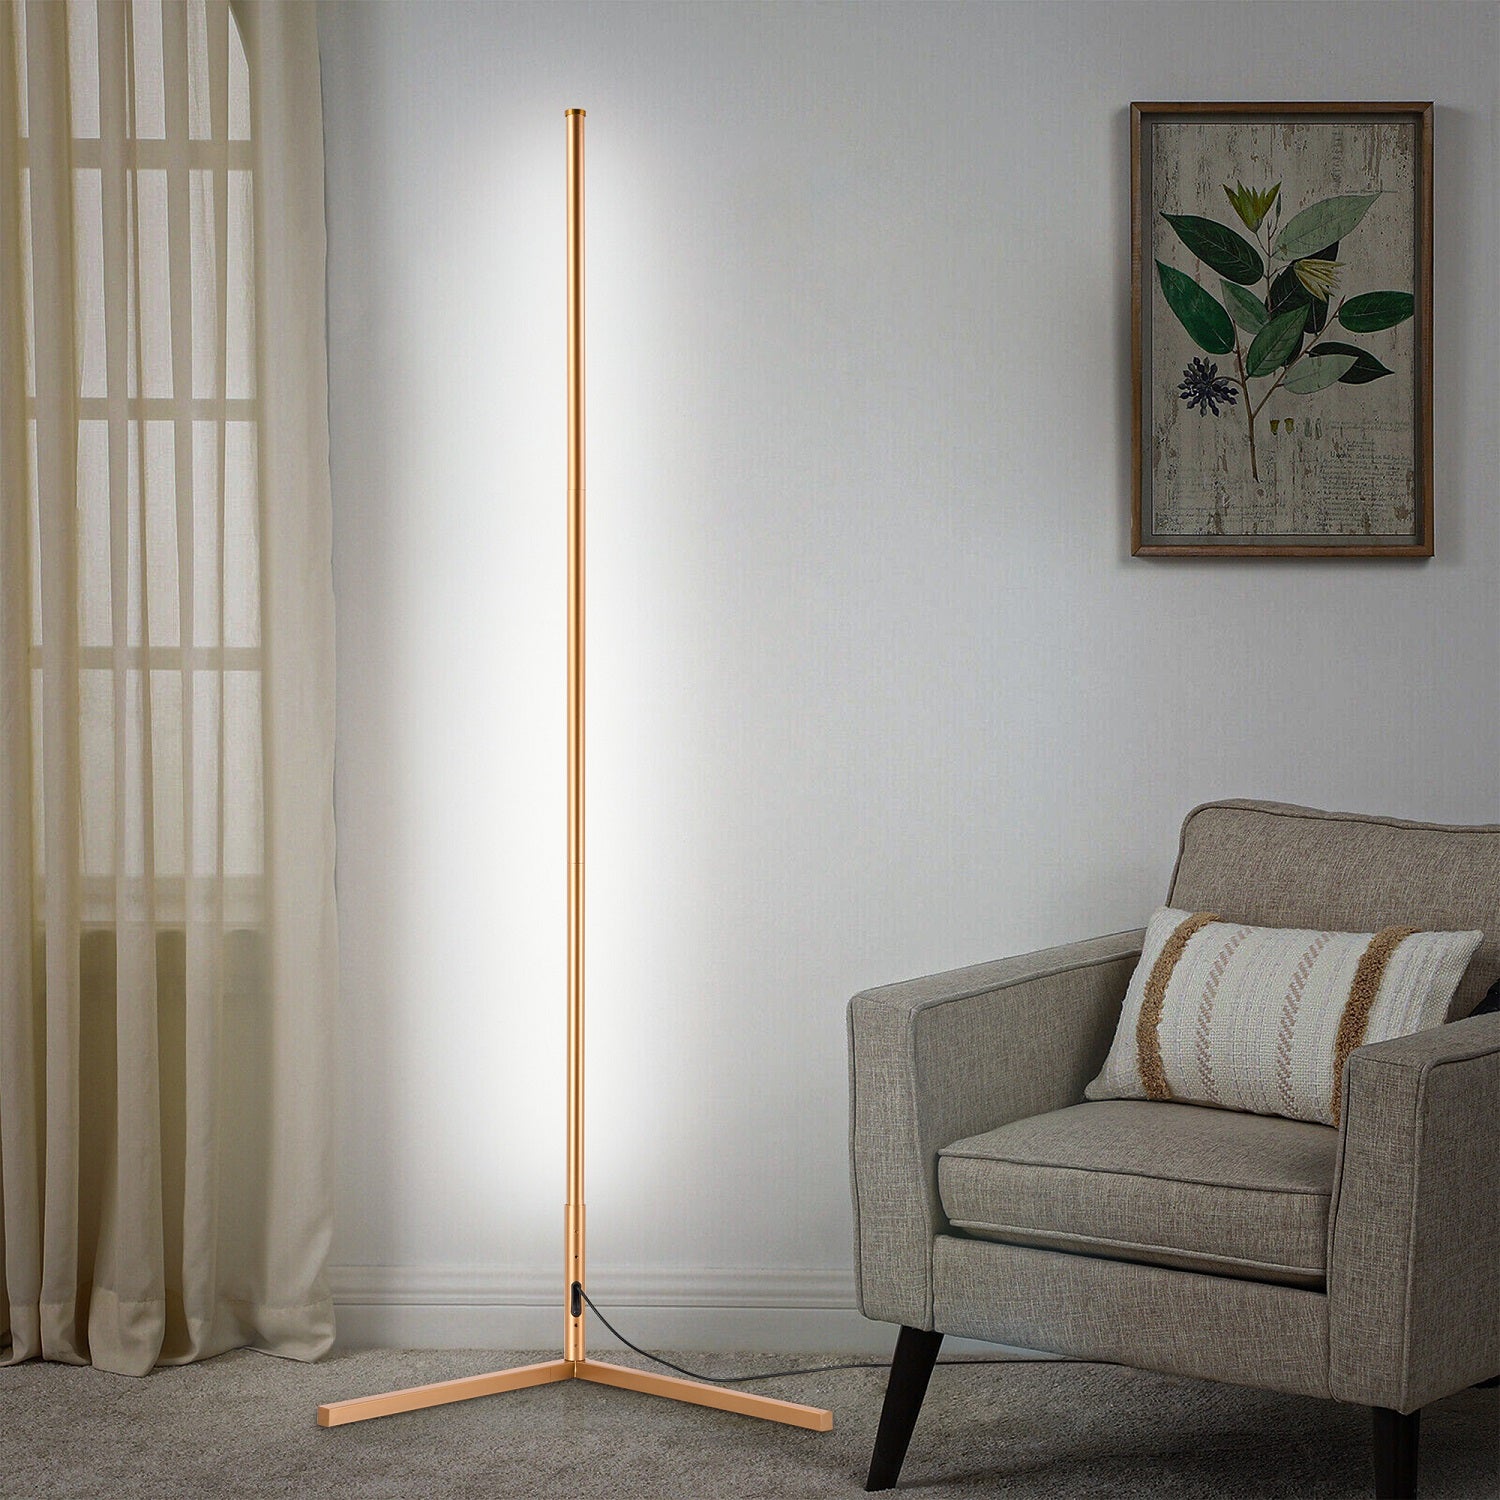 RGBCW Corner Floor Lamp - Golden-1